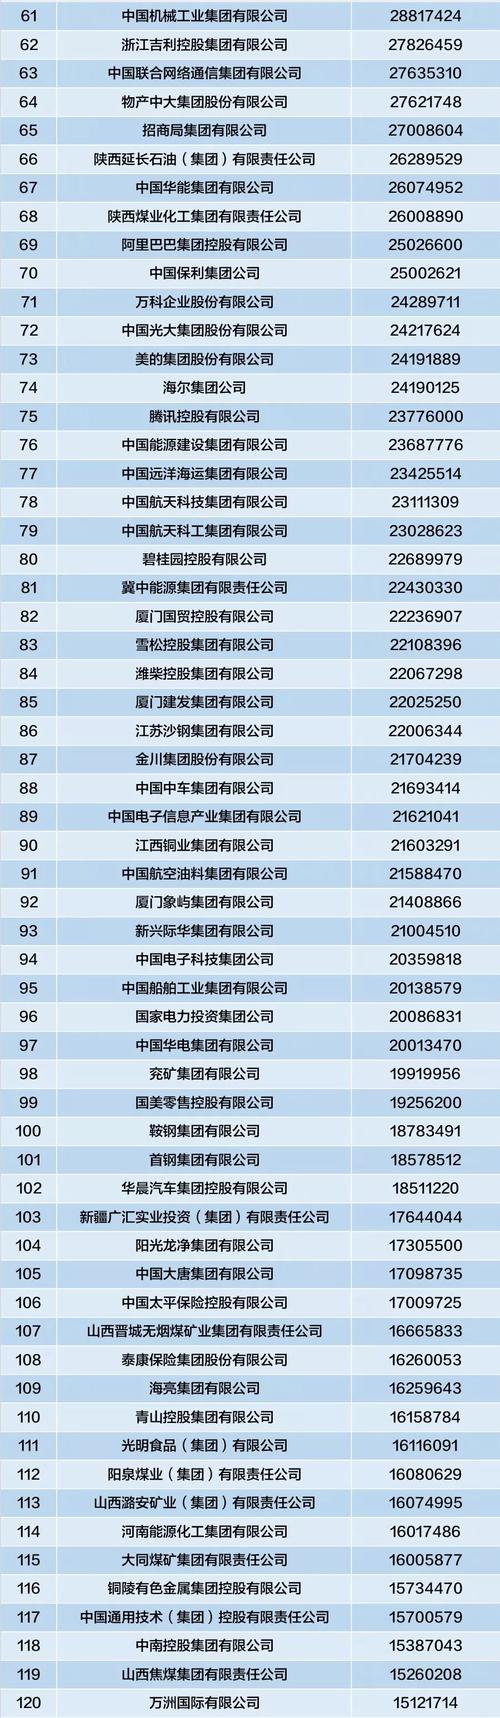 中国世界500强企业